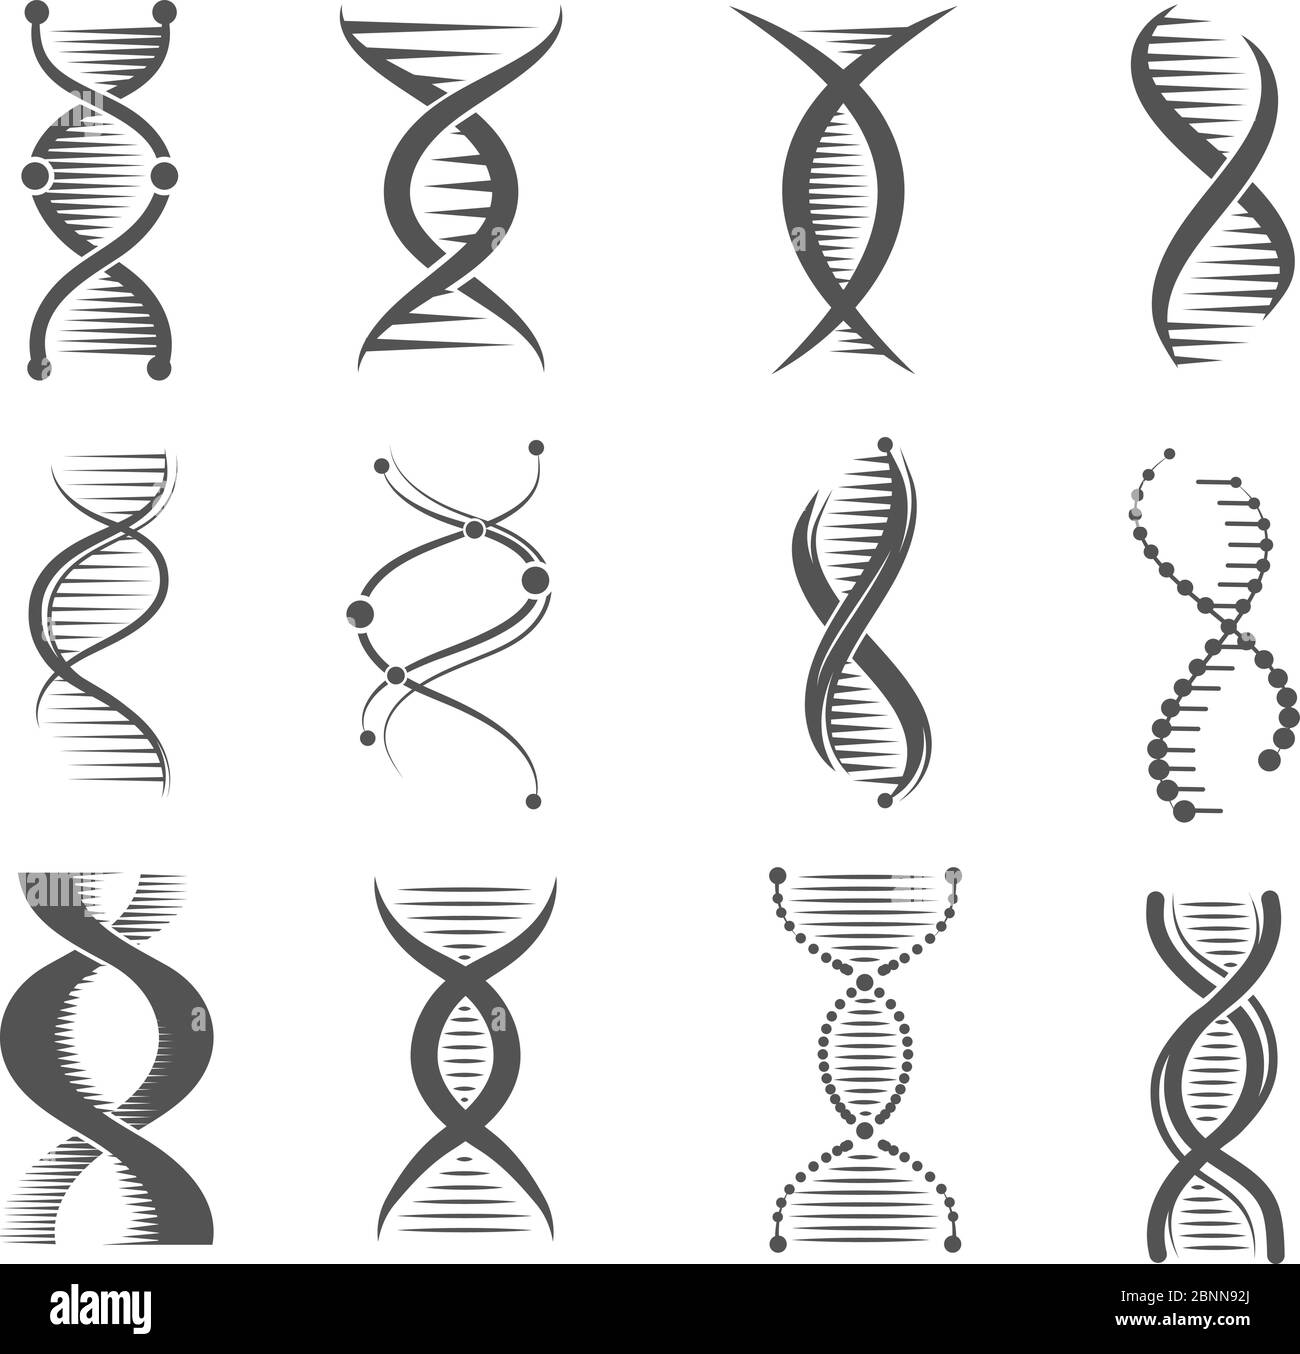 Icônes de spirale d'ADN. Helix recherche en technologie humaine molécule et chromosomes symboles de vecteur médical et pharmaceutique Illustration de Vecteur